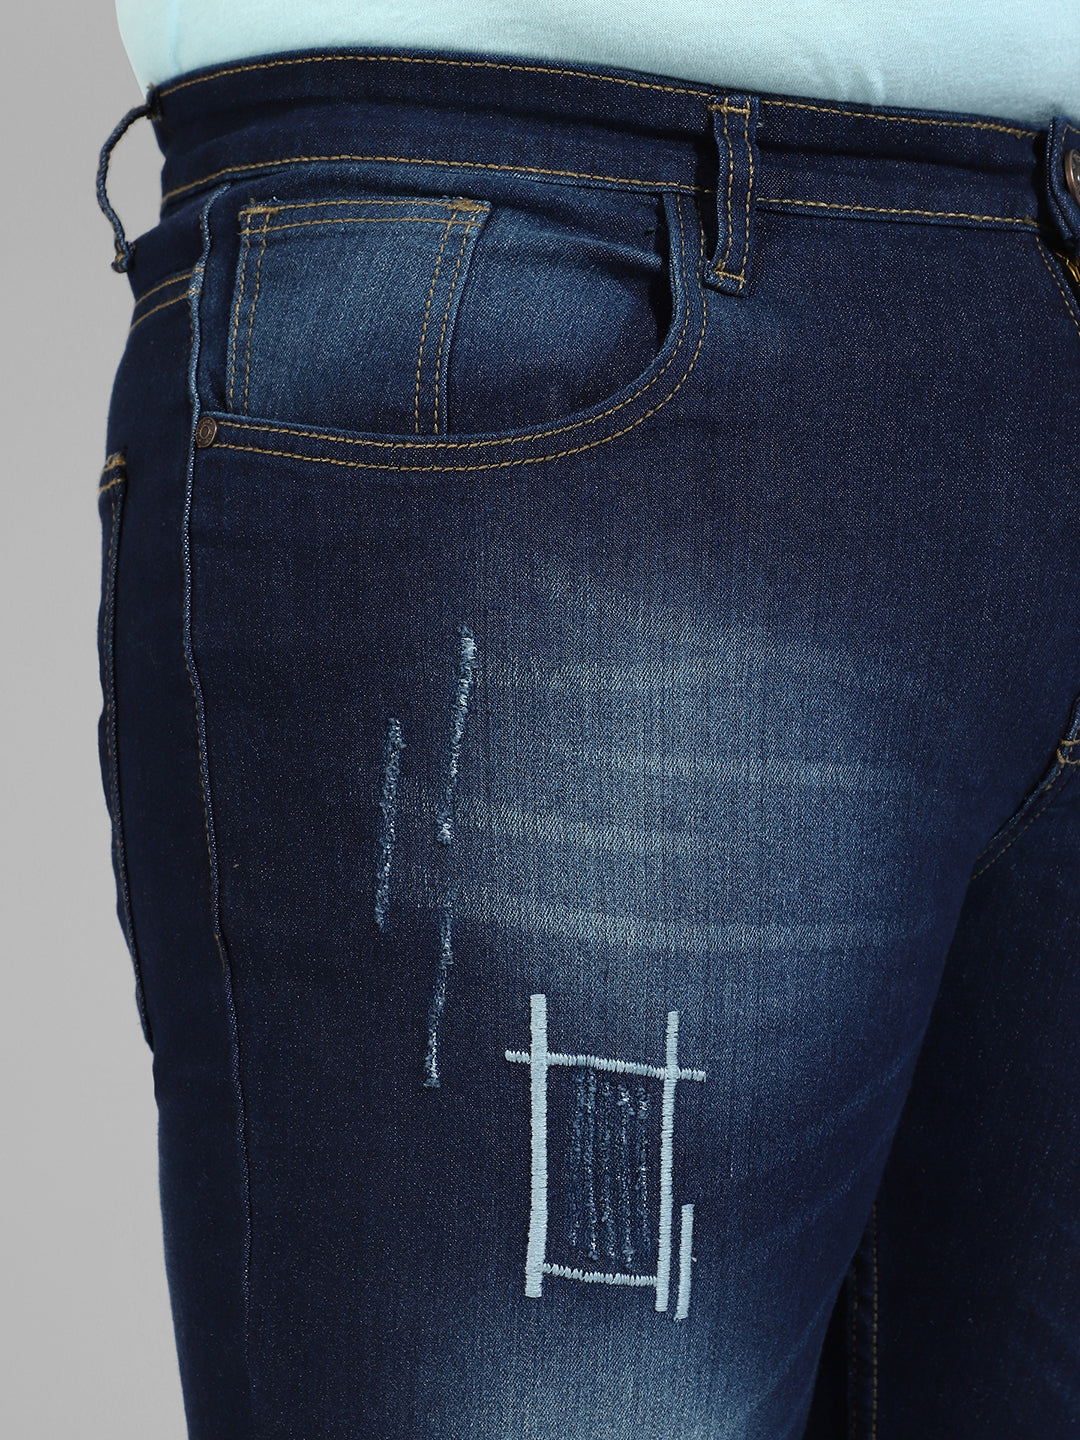 Instafab Plus Menâ€™s Regular Fit Denim Jeans